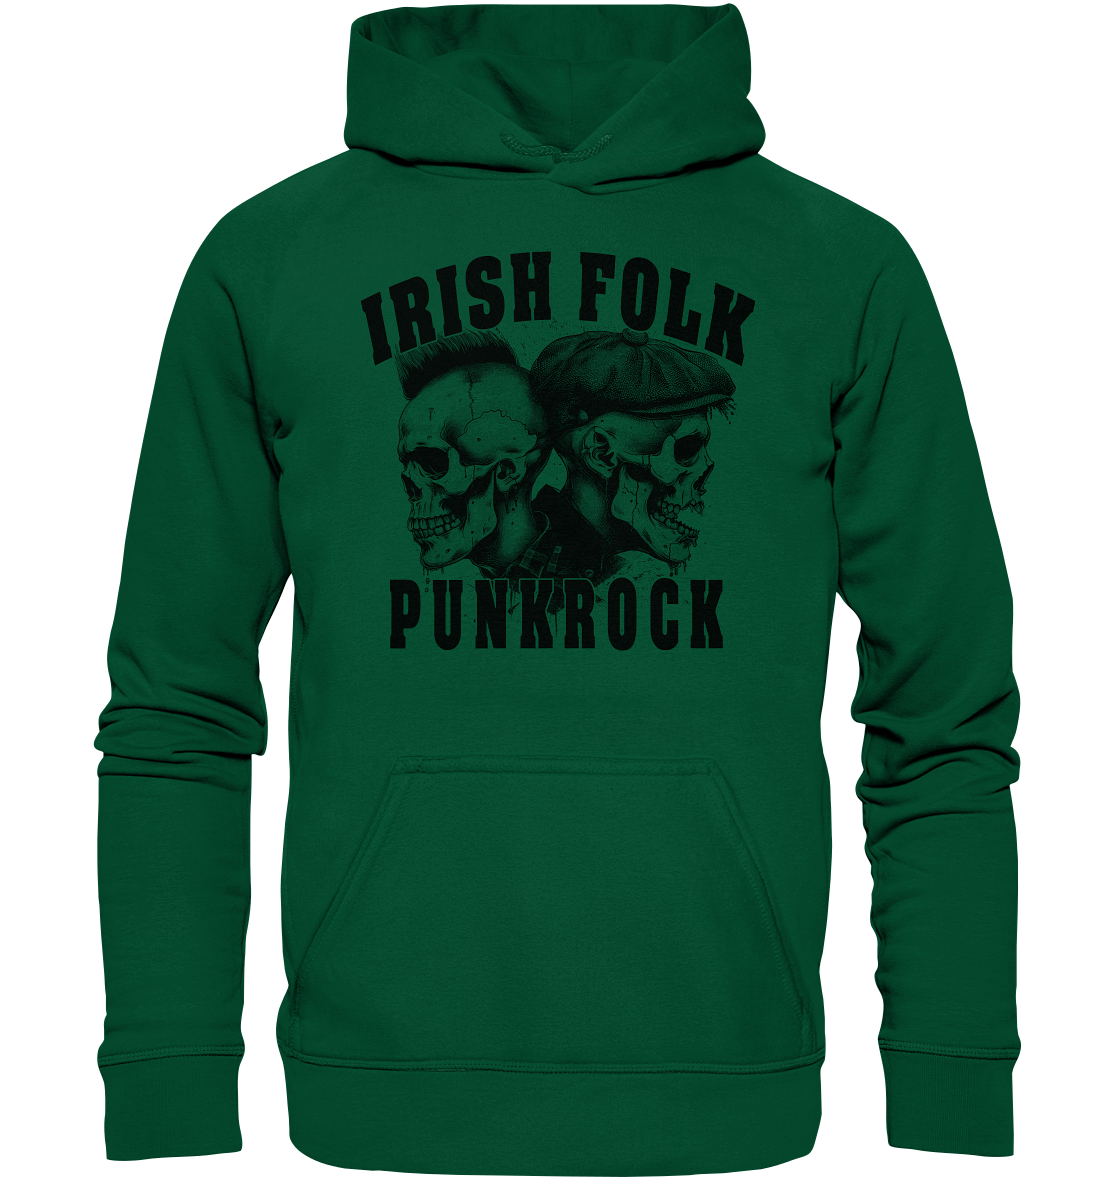 Irish Folk "Punkrock / Skulls" - Basic Unisex Hoodie